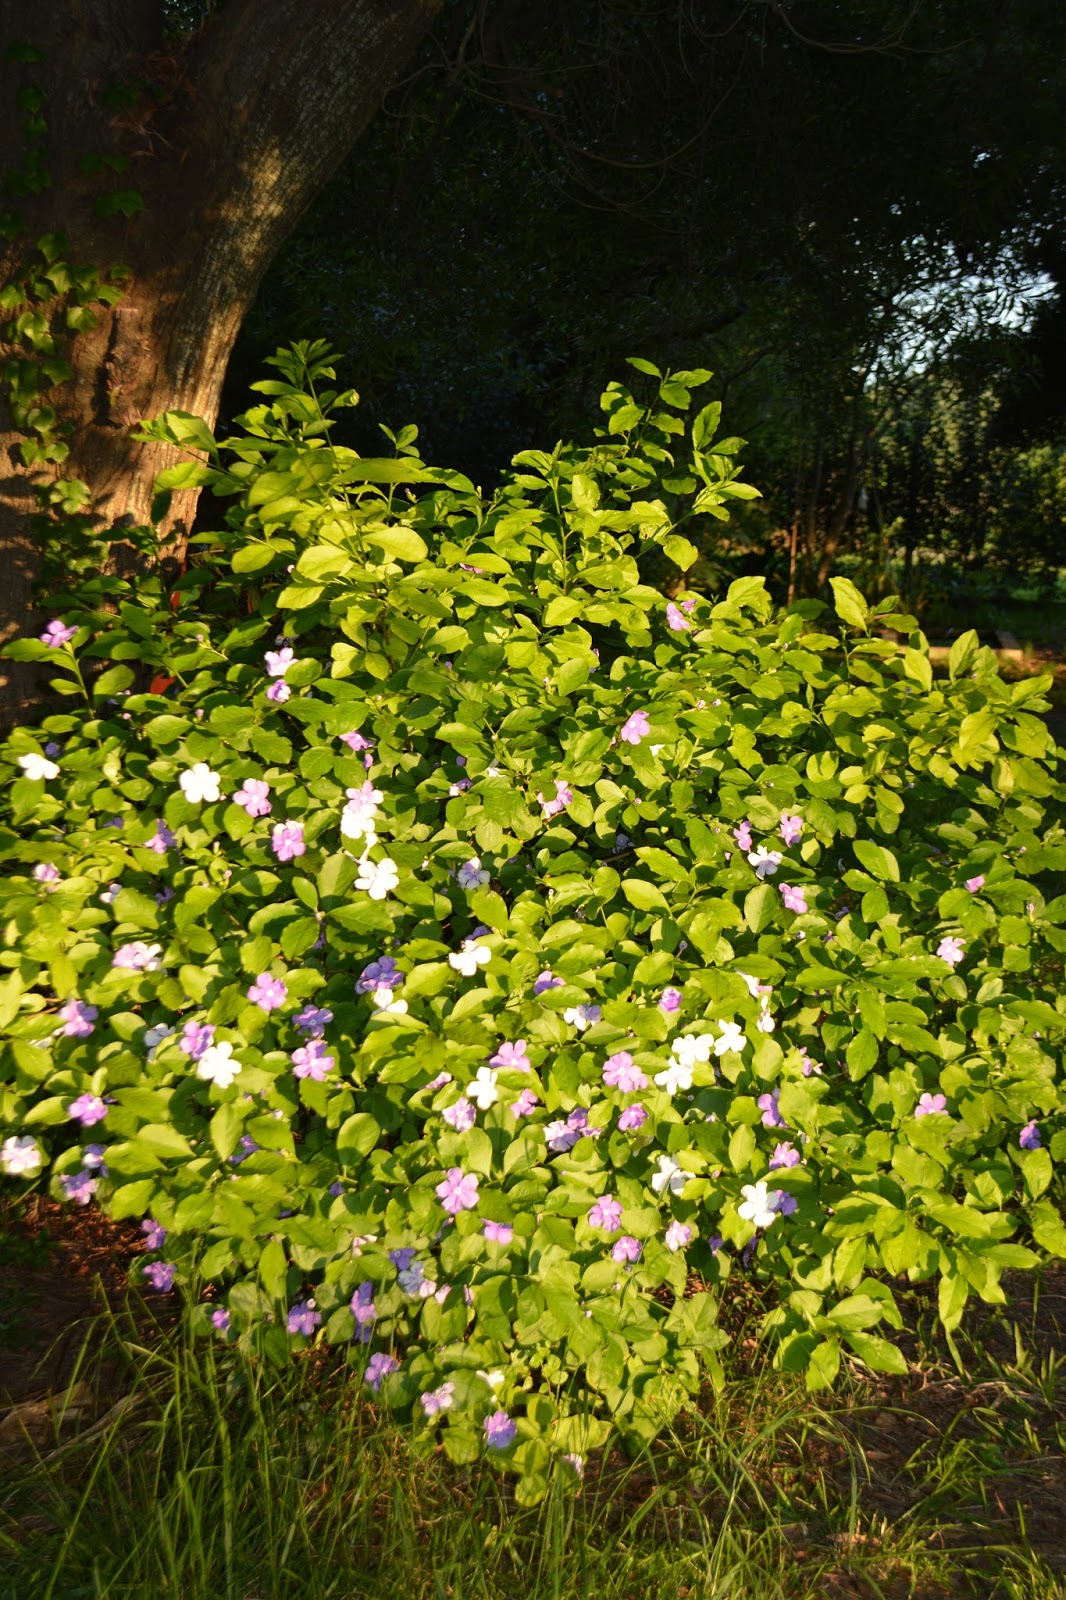 Jazmín paraguayo. Brunfelsia pauciflora. Jazmín de flor violeta y blanca.  Resistente fríos.